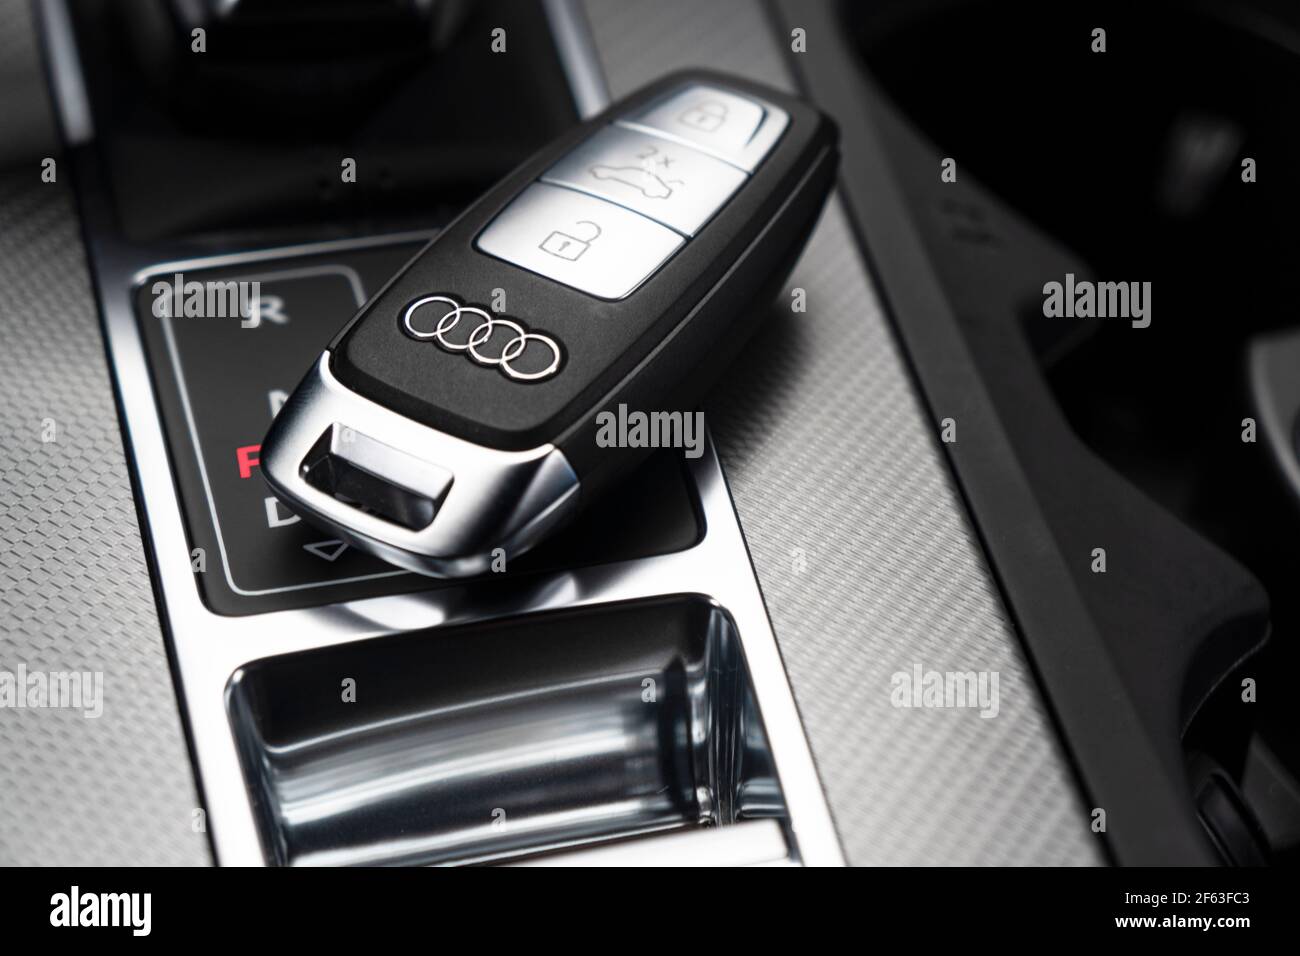 Sankt-Petersburg, Russie, 25 mars 2021: Gros plan des clés de voiture Audi A6 en cuir noir interio d'une voiture moderne. Détails de l'intérieur de l'Audi A6 S-Line. Banque D'Images